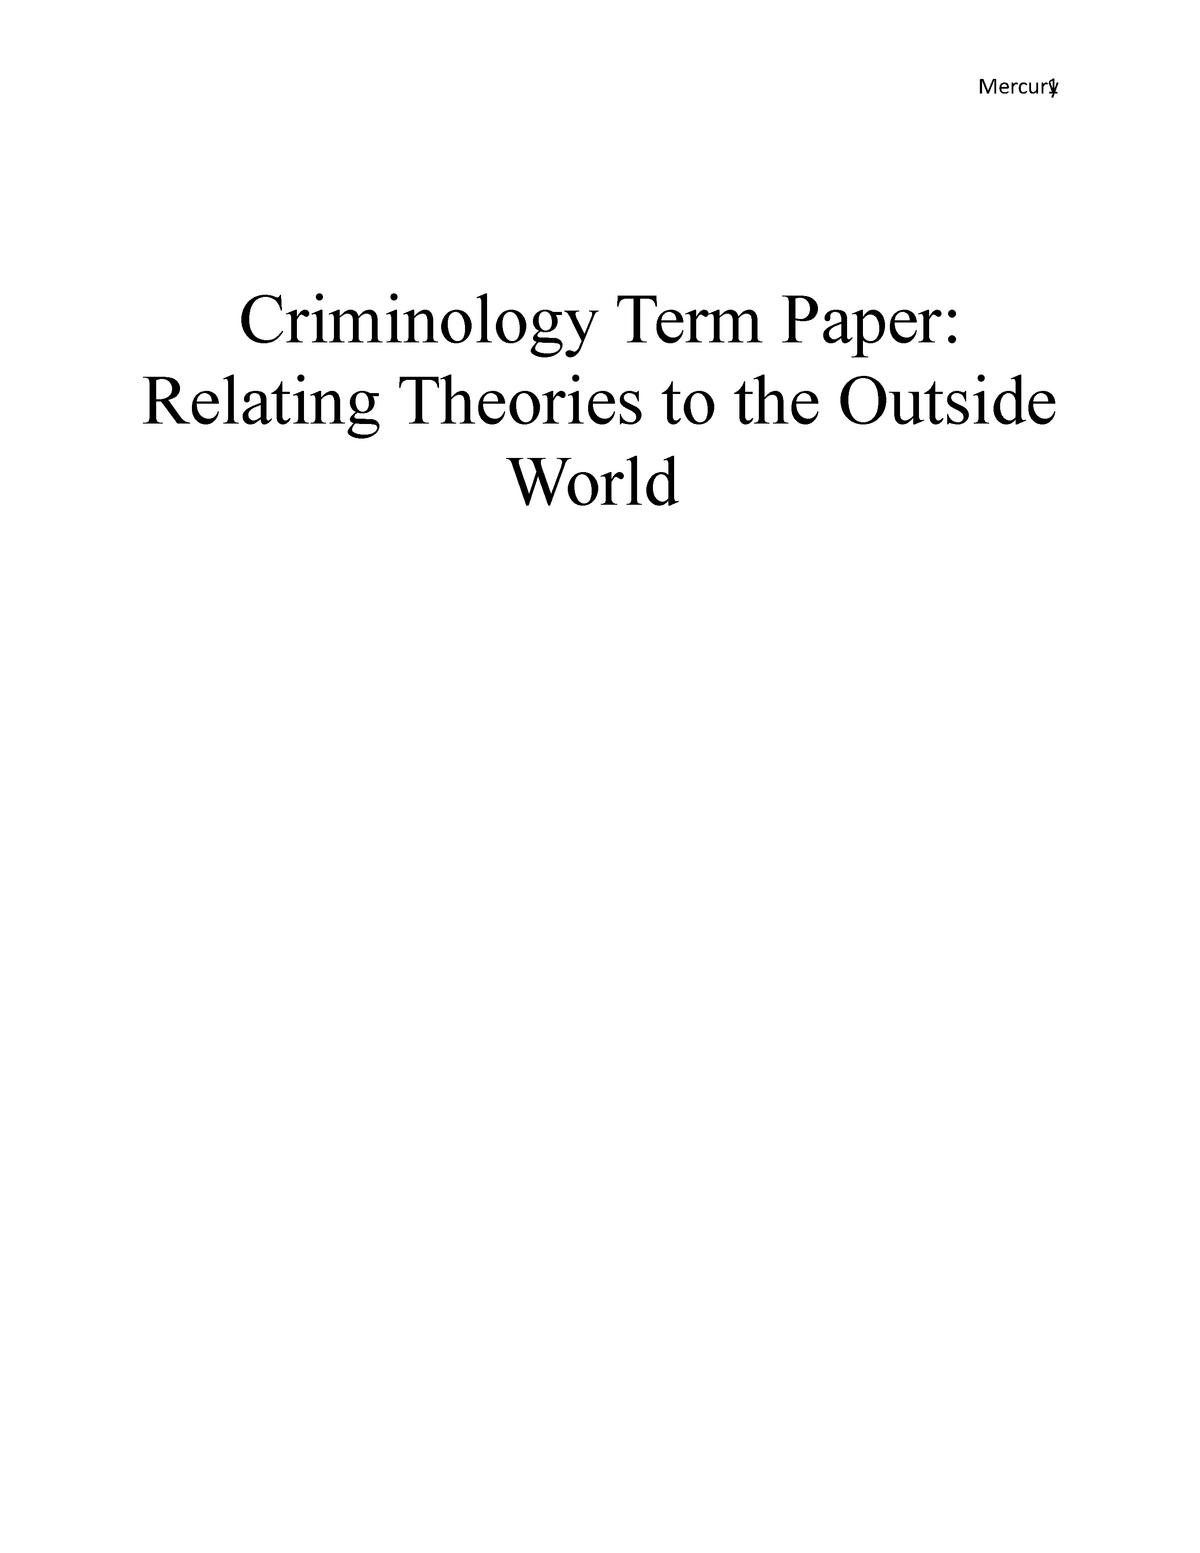 criminology term paper